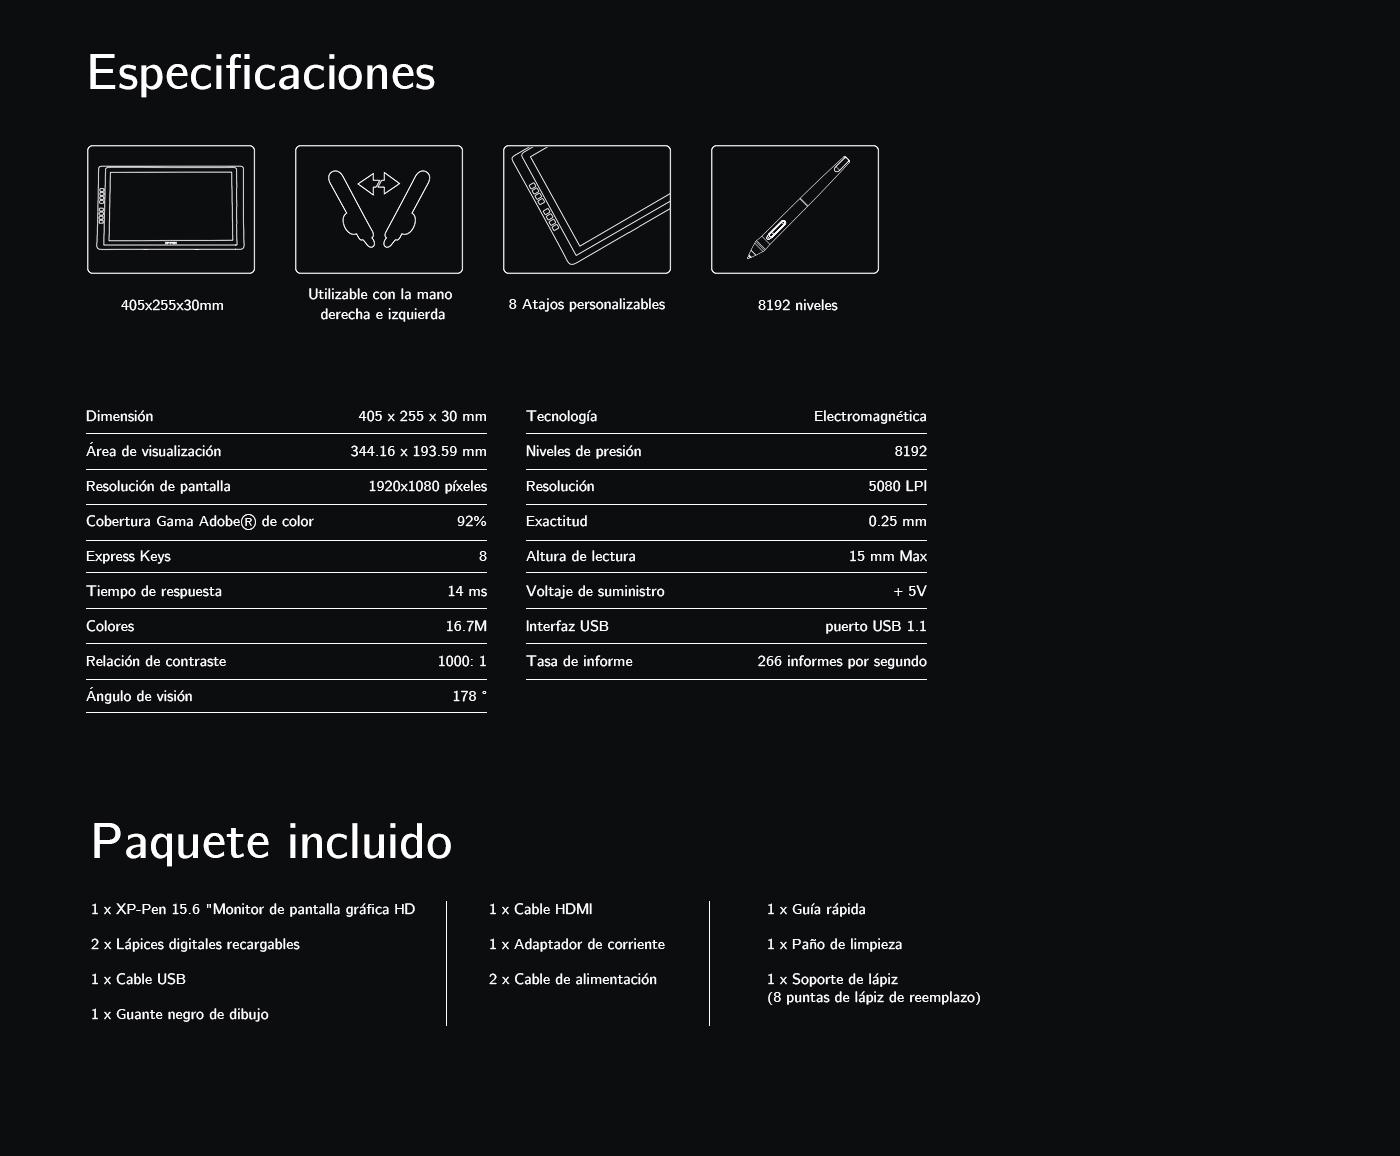 Especificaciones de pantalla gráfica XP-Pen Artist 16 Pro